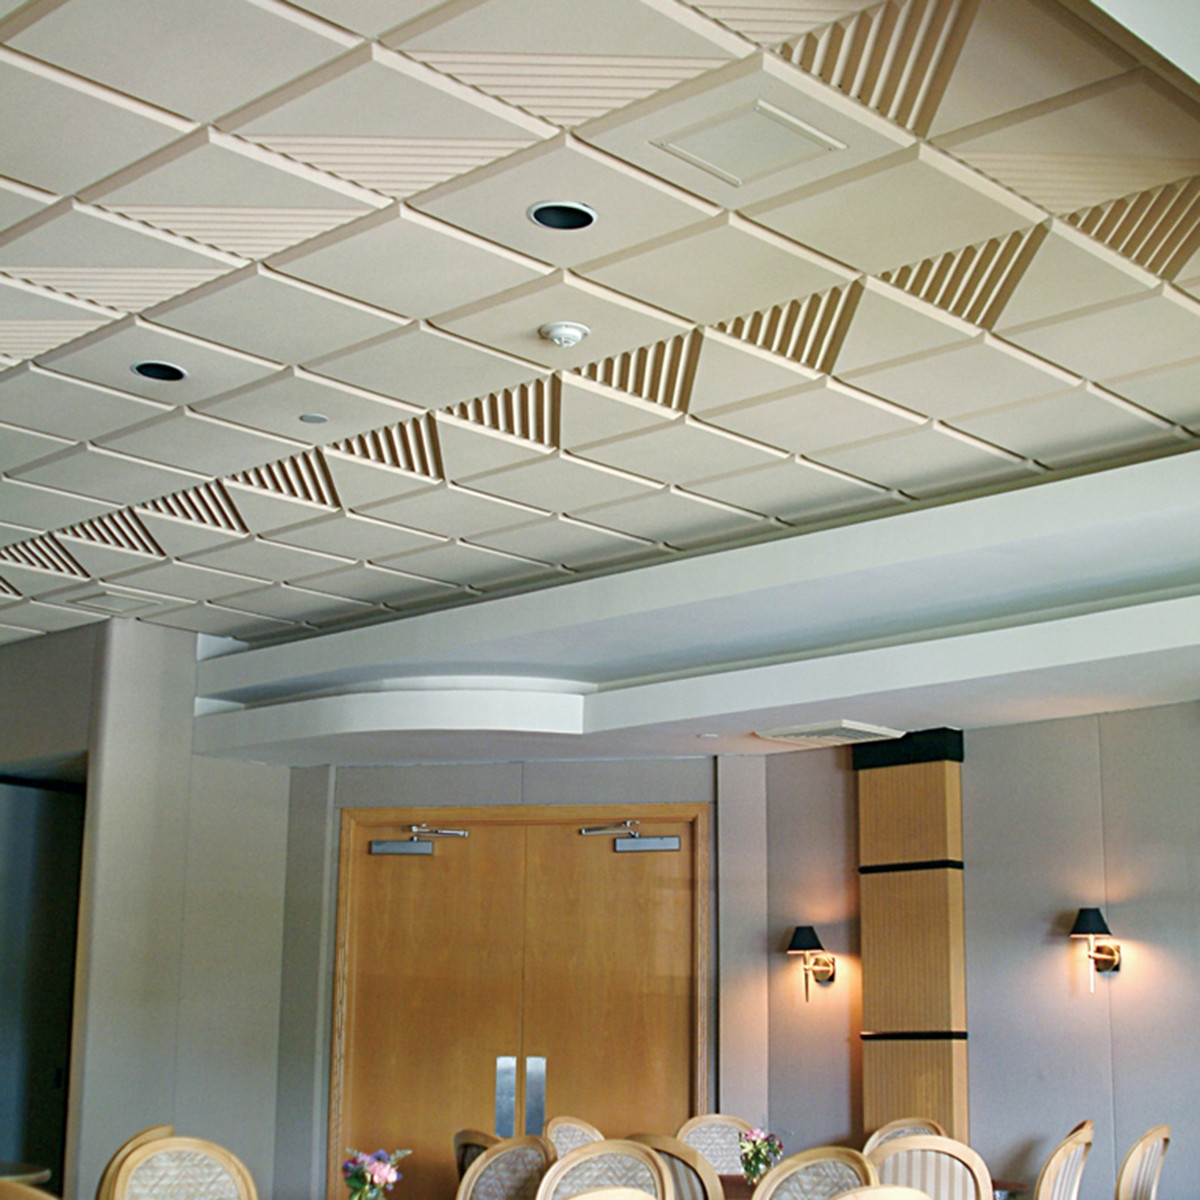 Design Acoustical Ceiling Tiles Design Acoustical Ceiling Tiles sonex contour ceiling tile acoustical solutions 1200 X 1200